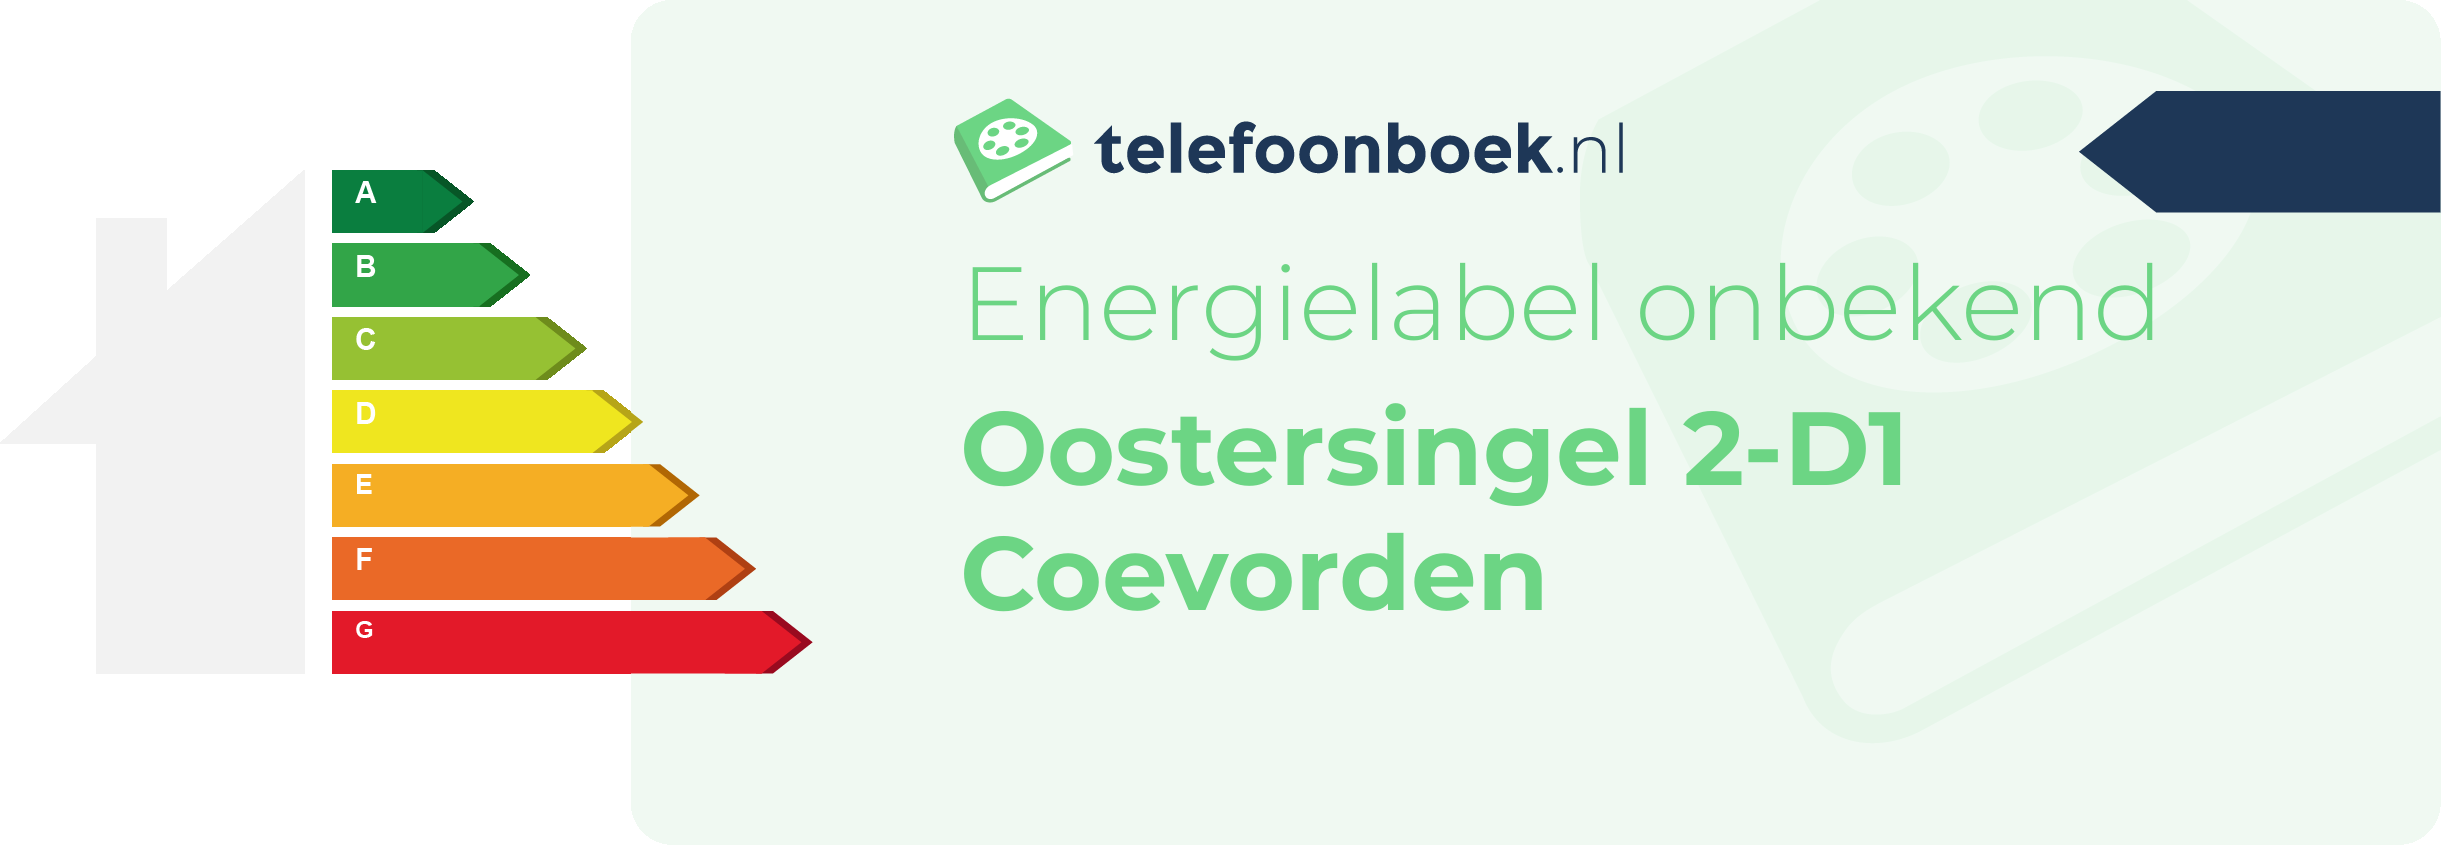 Energielabel Oostersingel 2-D1 Coevorden